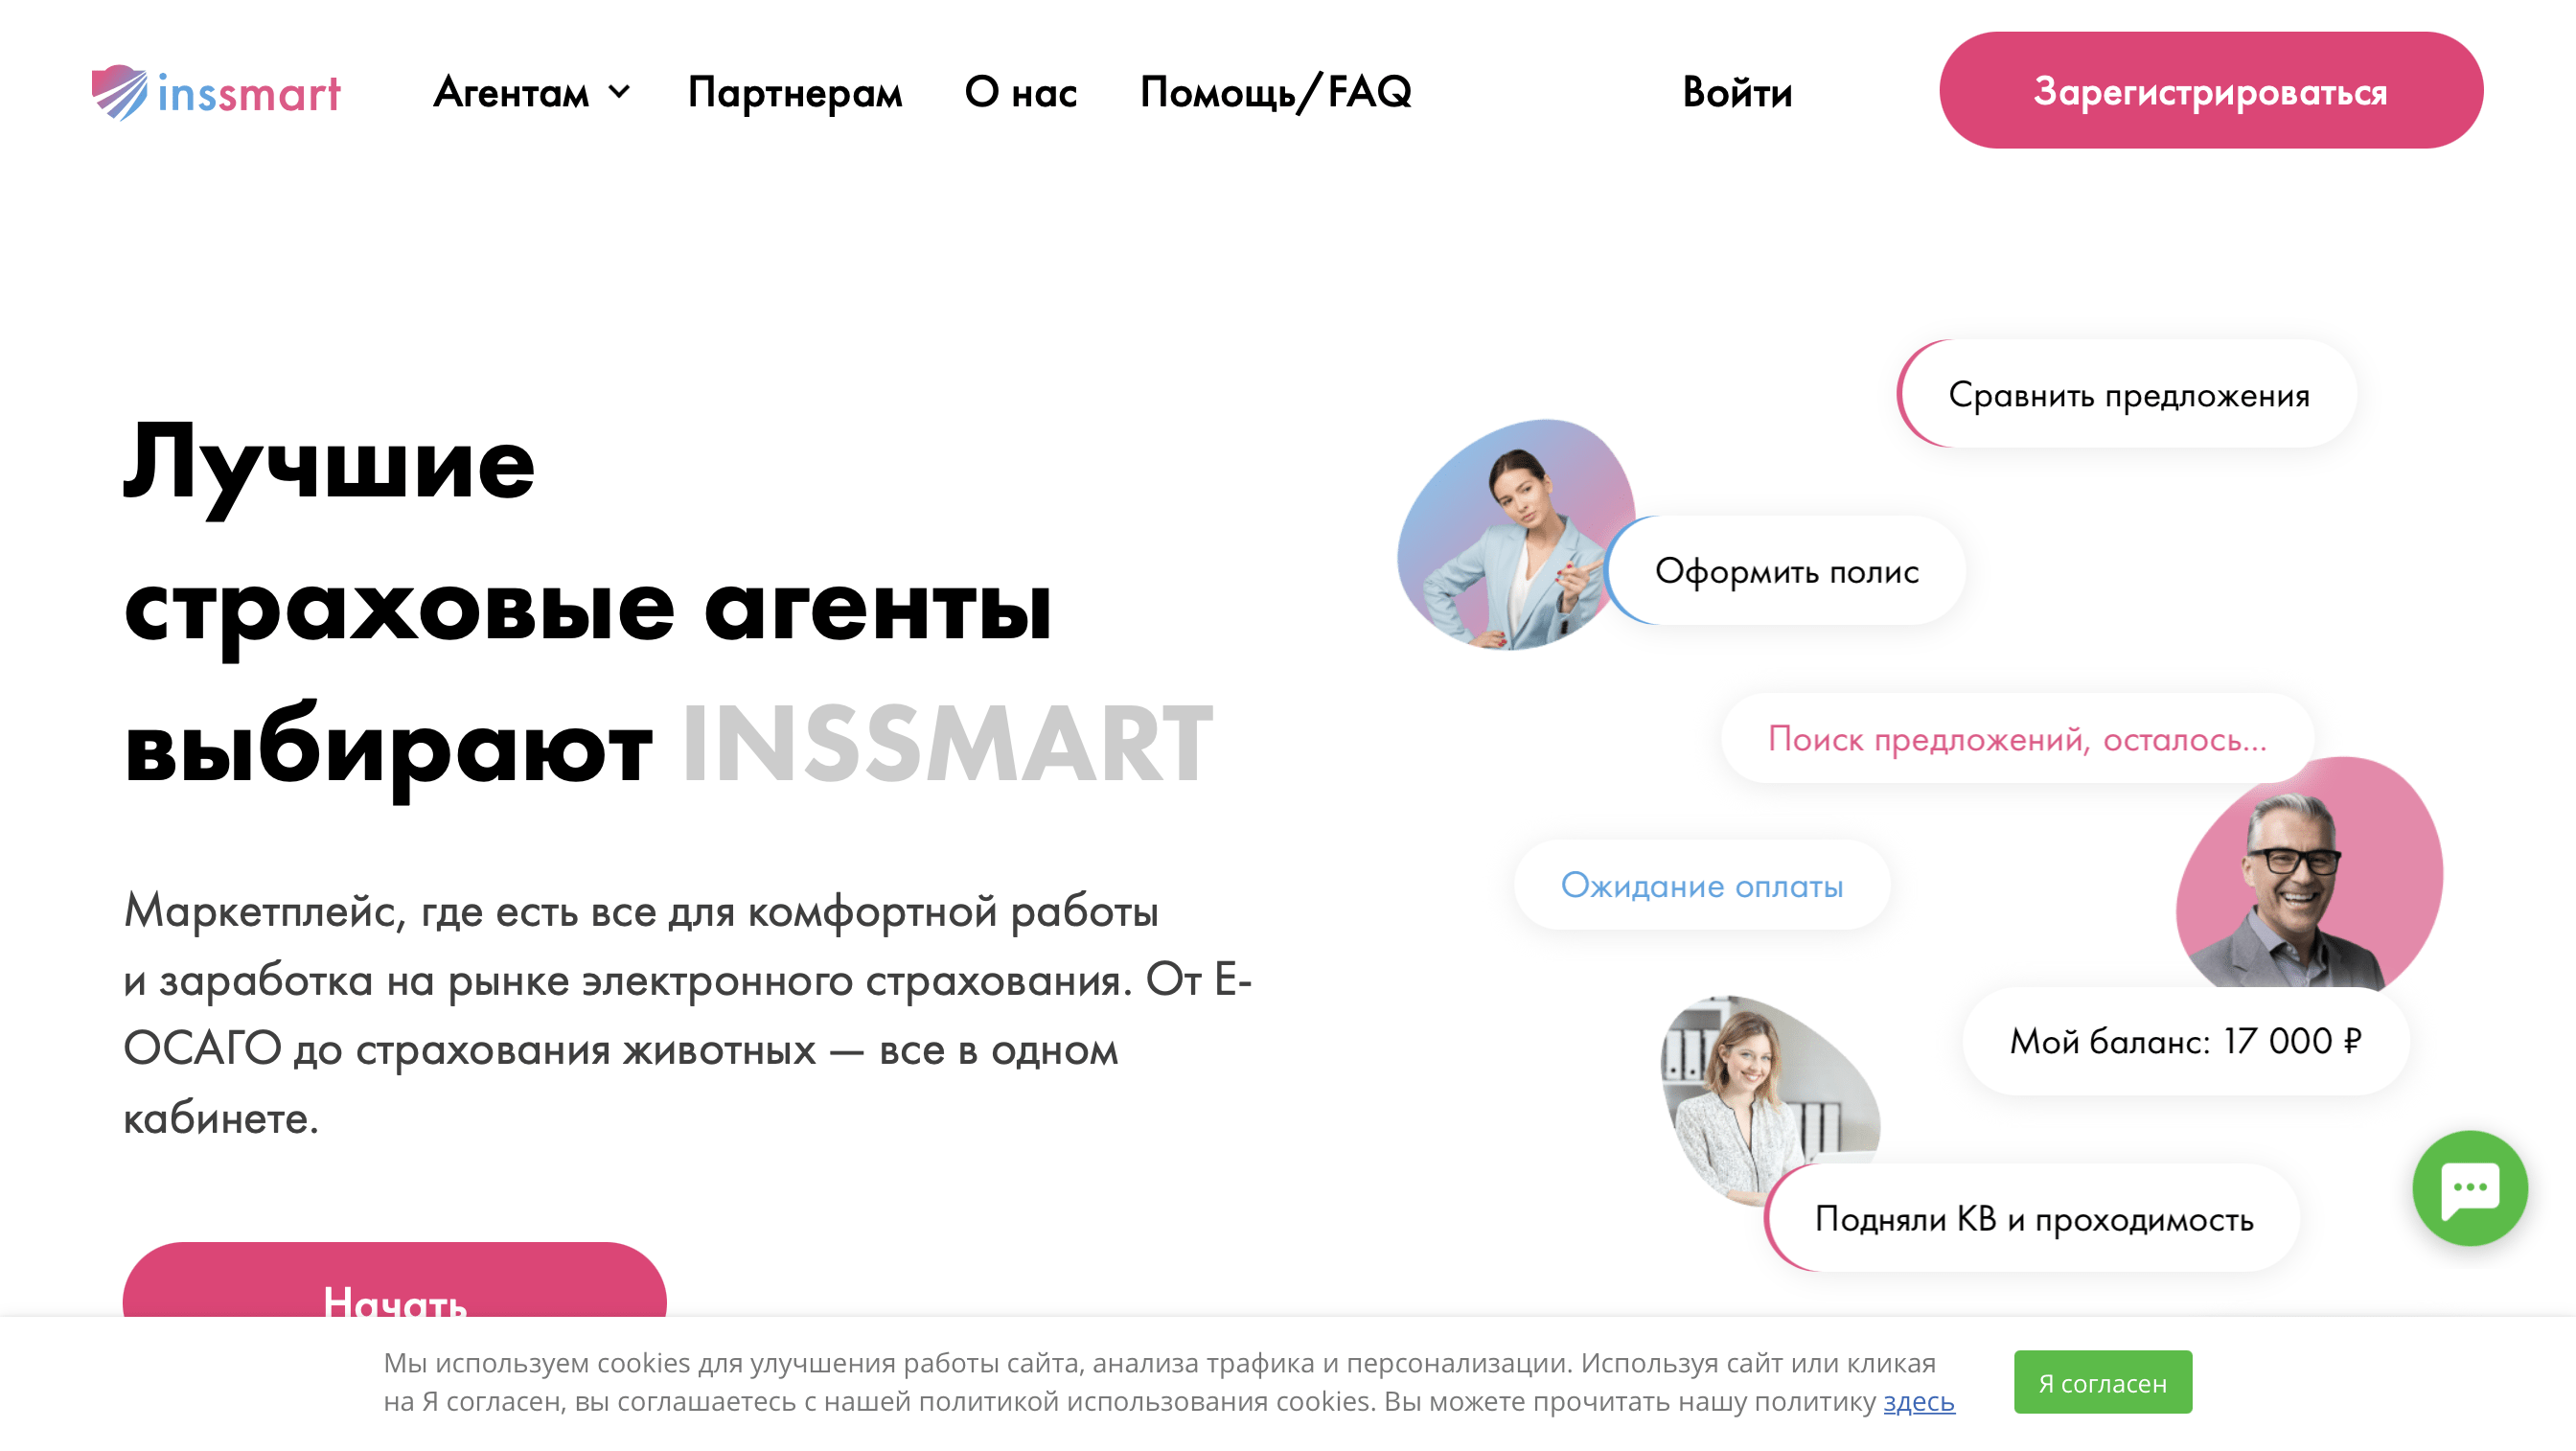 INSSMART - маркетплейс для эффективной работы и заработка в электронном страховании